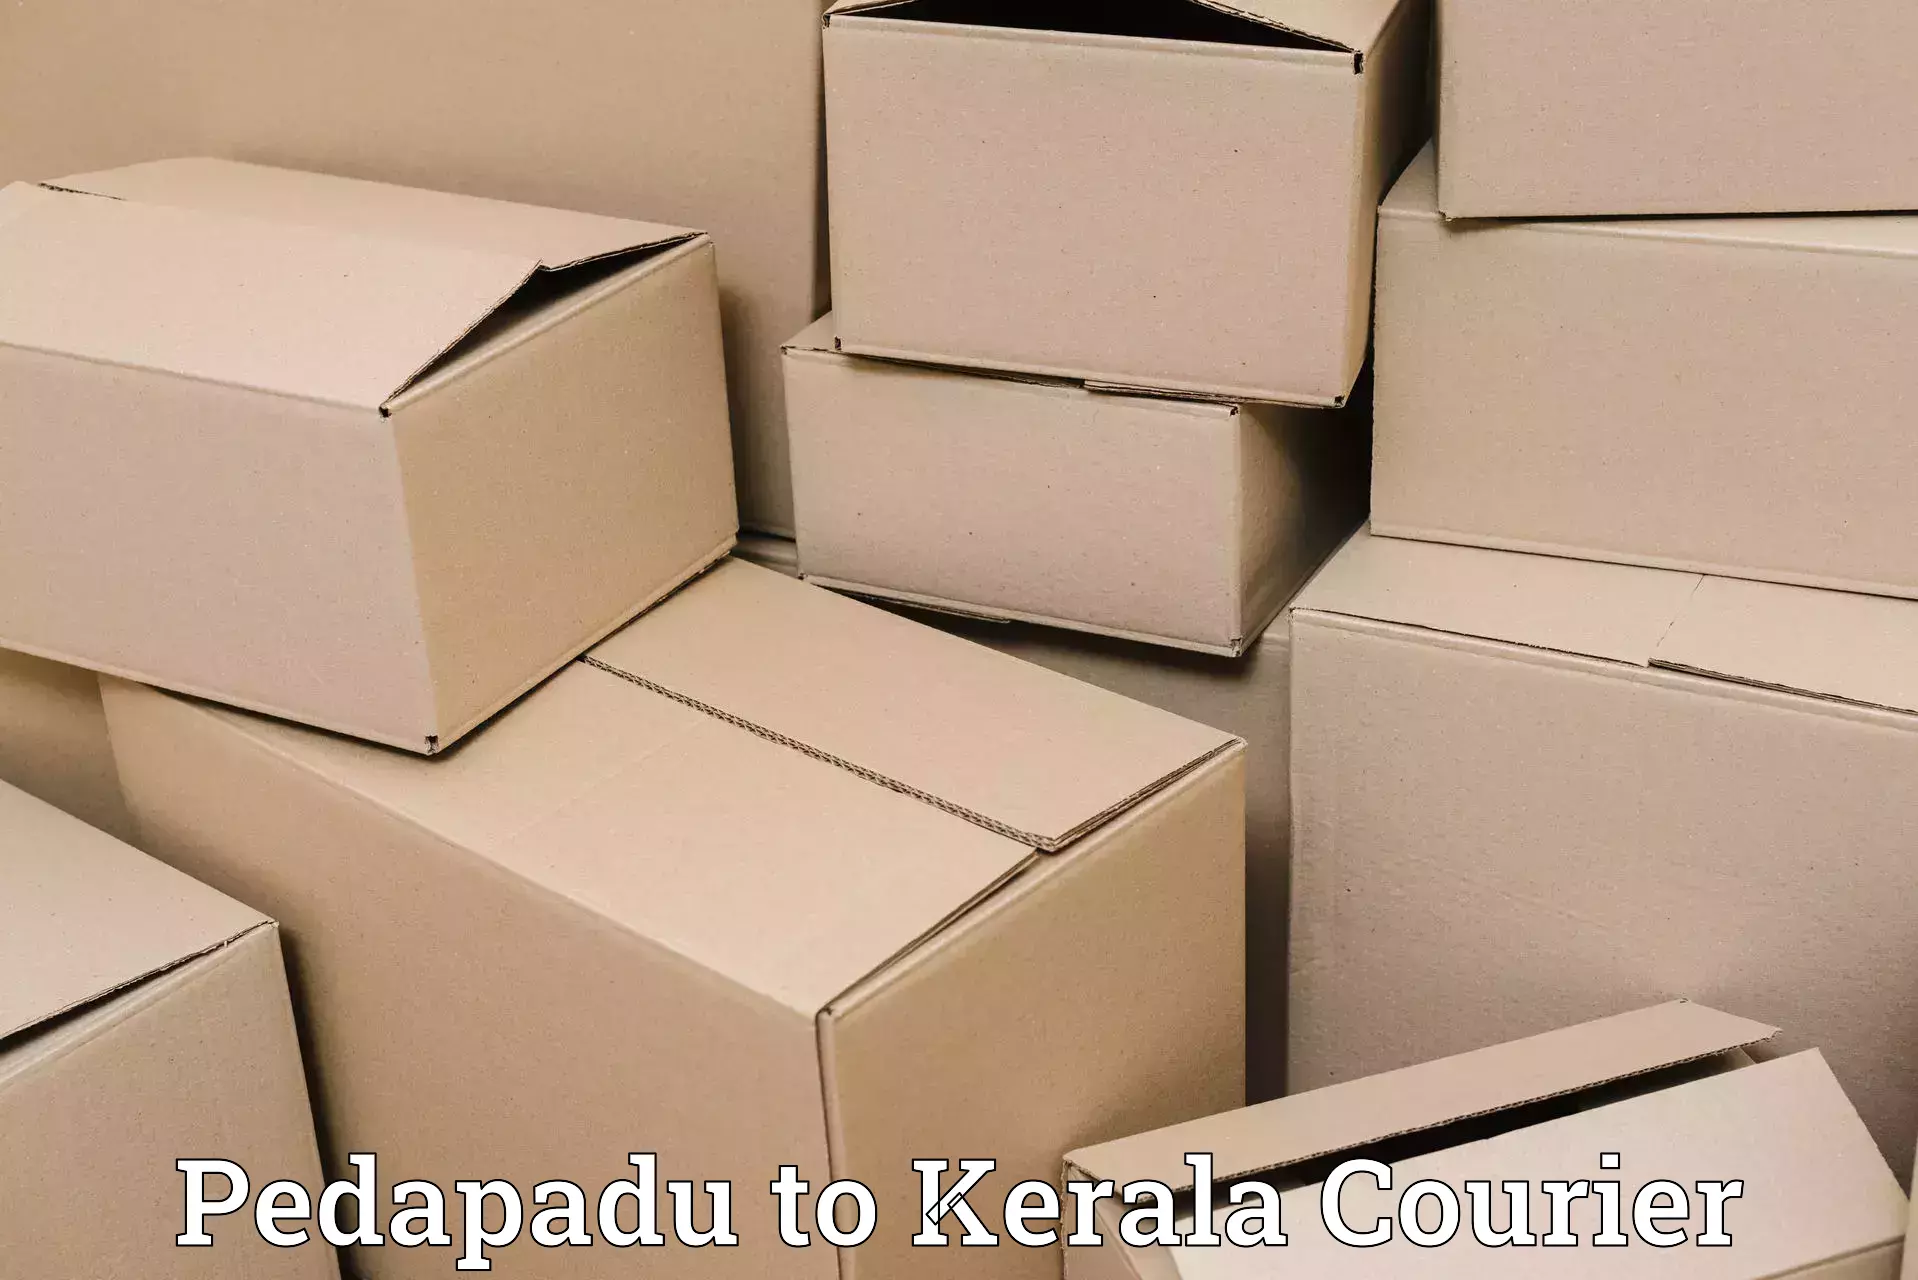 Ground shipping Pedapadu to Palakkad